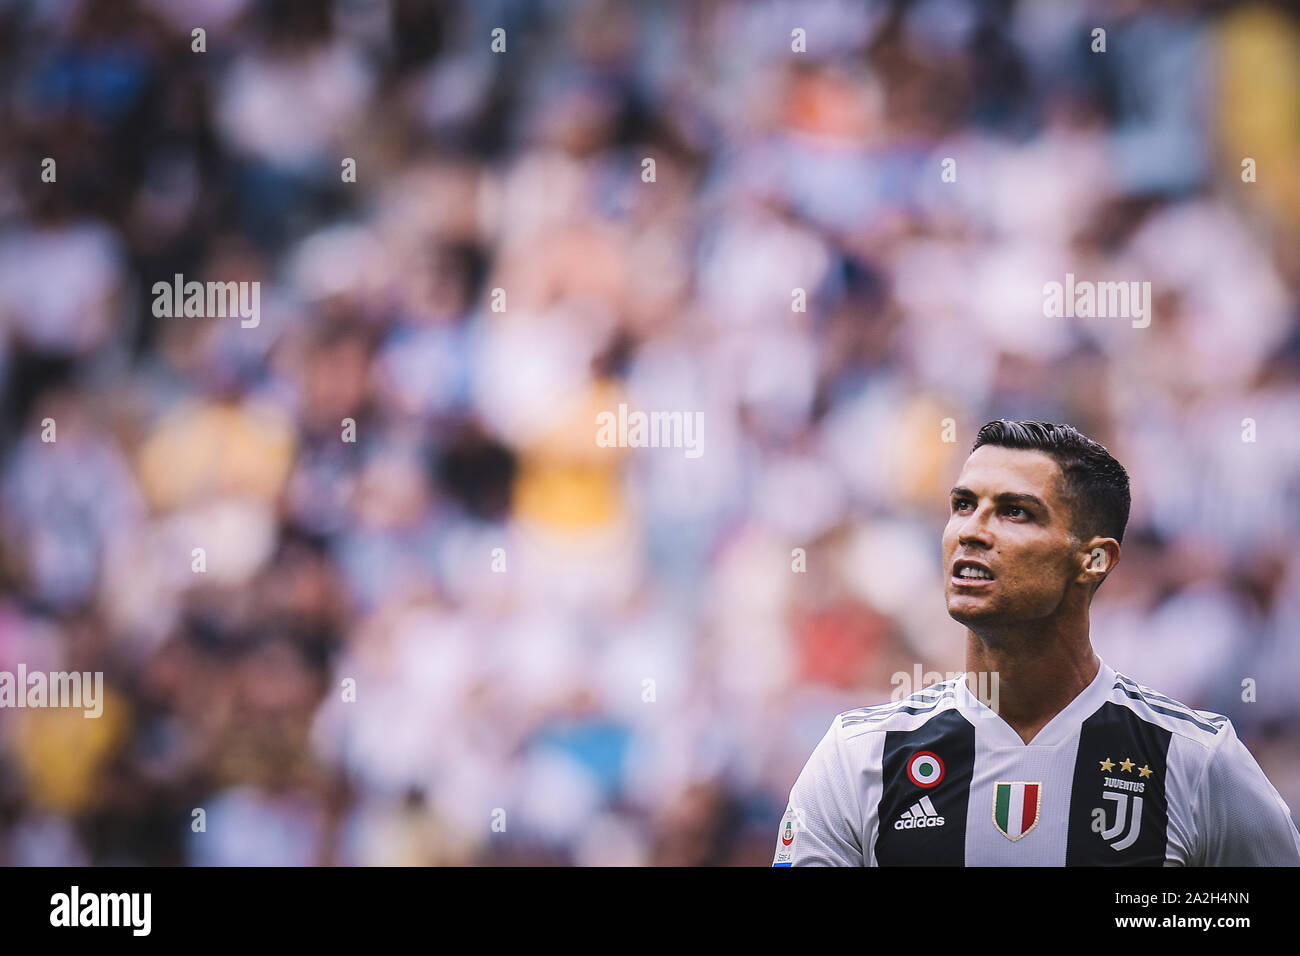 Cristiano Ronaldo gioca per la Juventus Soccer team in Italia Foto Stock